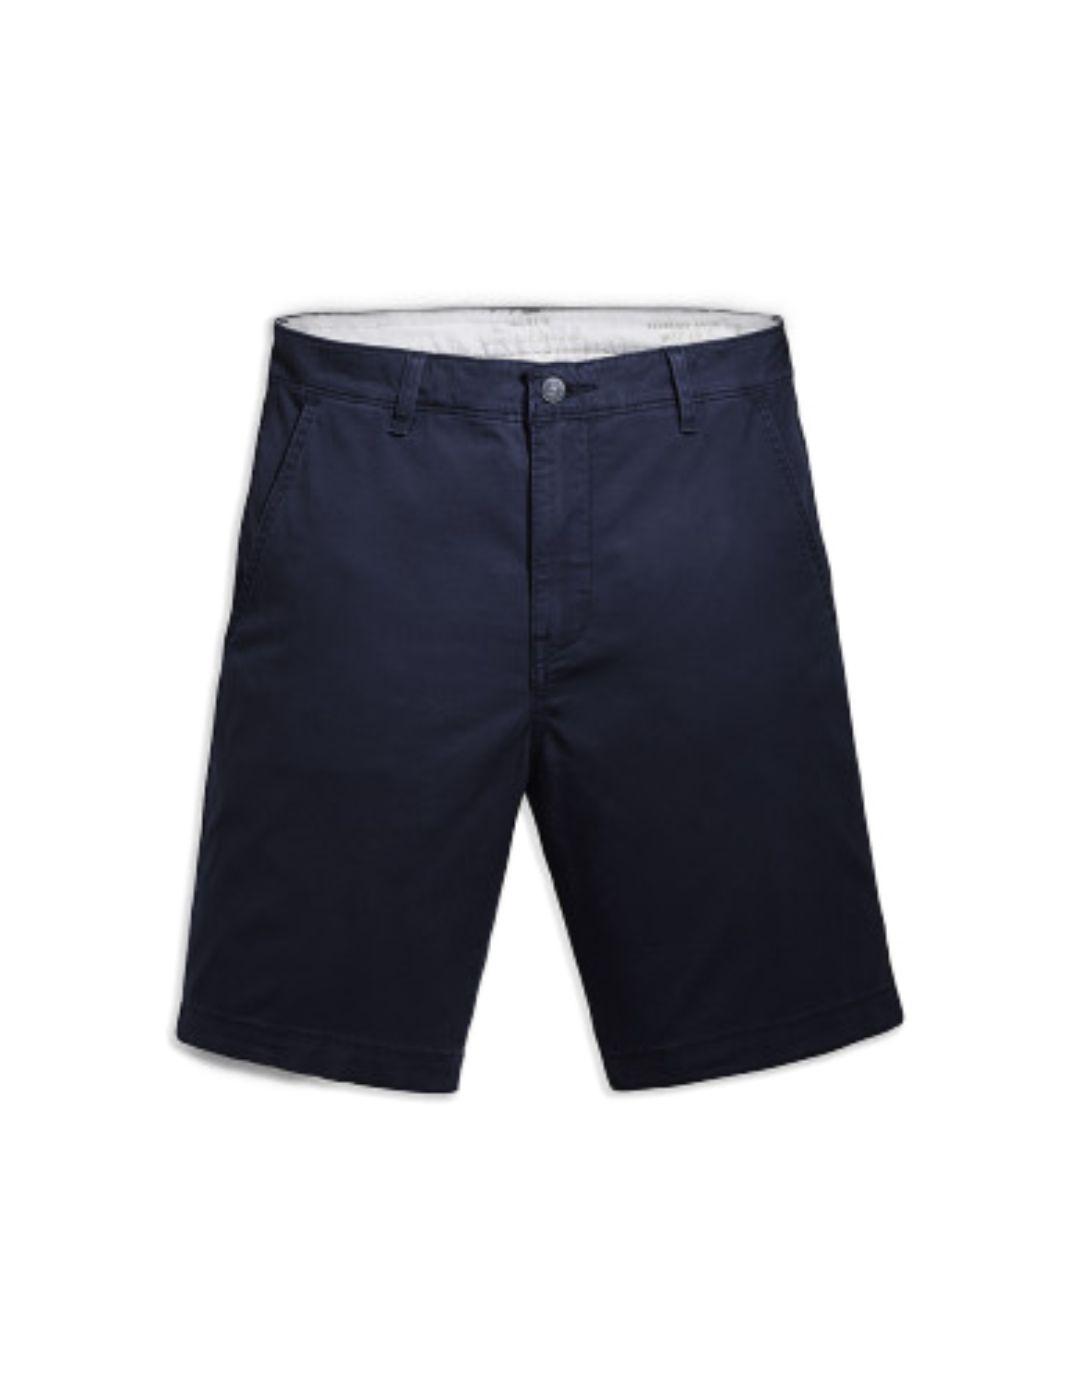 Shorts Levi´s chino azul marino de hombre